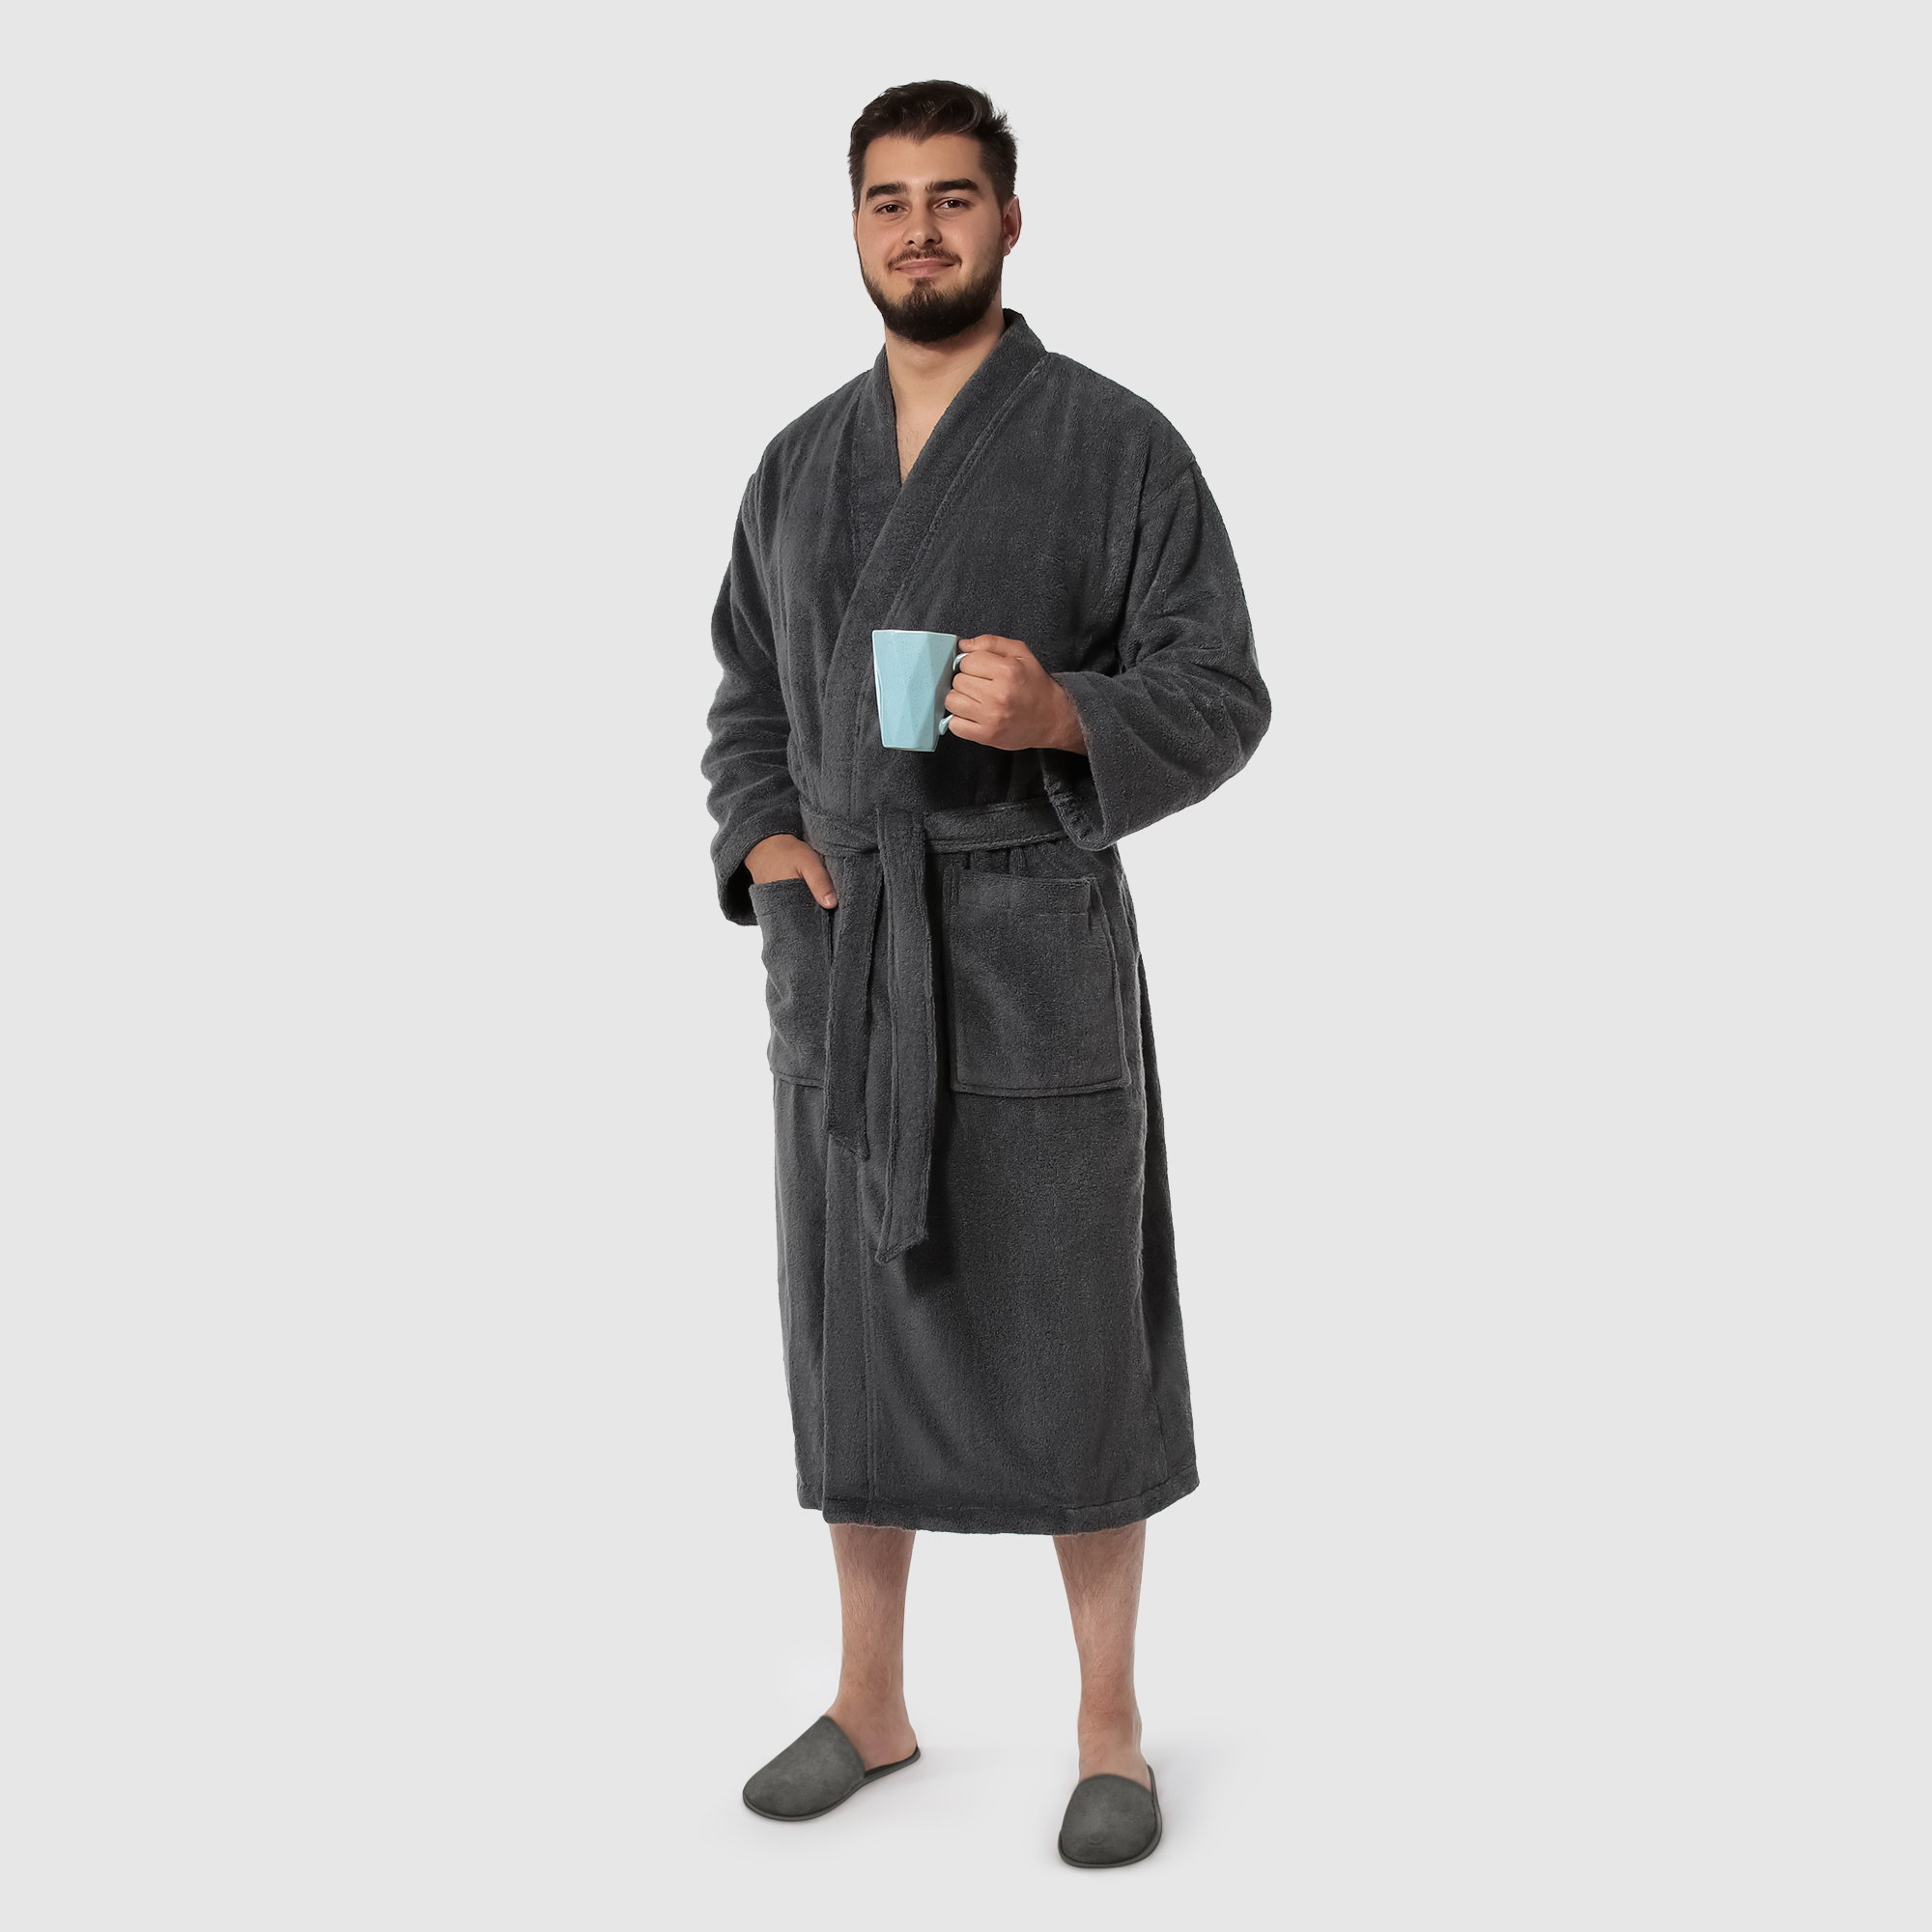 Мужской халат Maisonette Parla тёмно-серый M халат мужской asil sauna brown xl вафельный с капюшоном